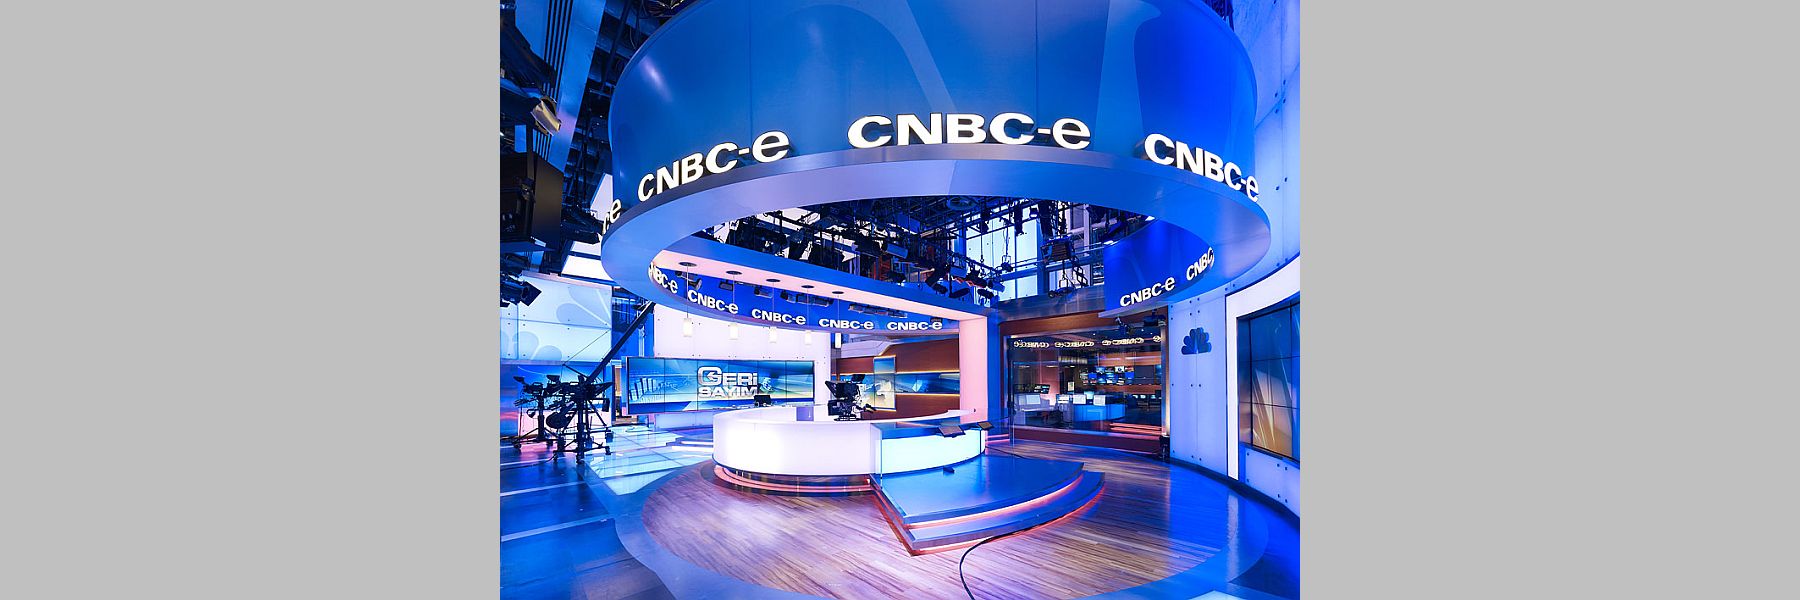 CNBC-E TV’nin Tercihi Form MHI Klima Sistemleri Oldu